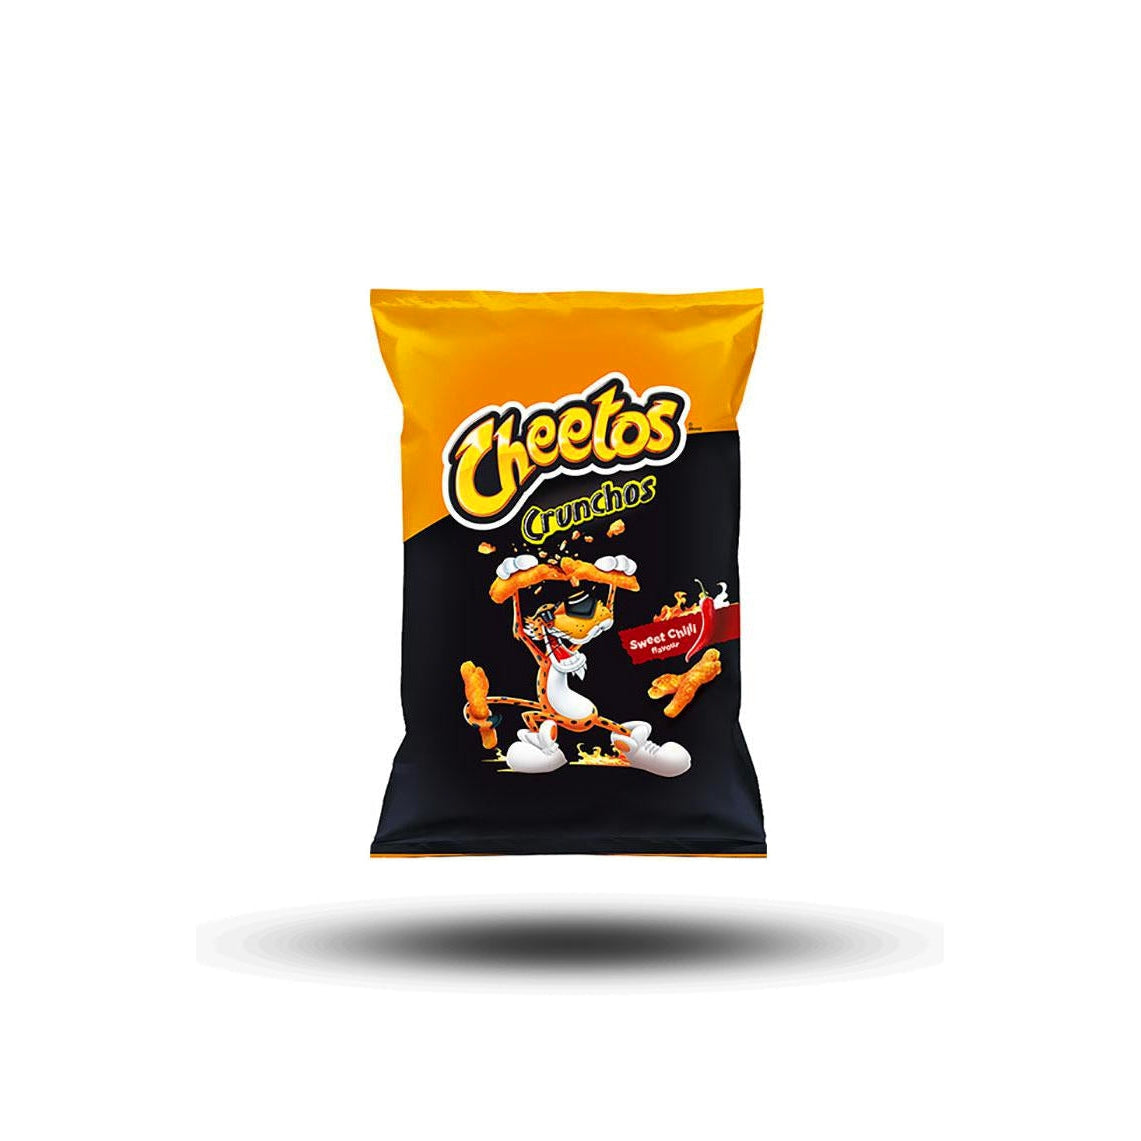 Cheetos Crunchos Sweet Chilli flavour 95g-Cheetos-SNACK SHOP AUSTRIA